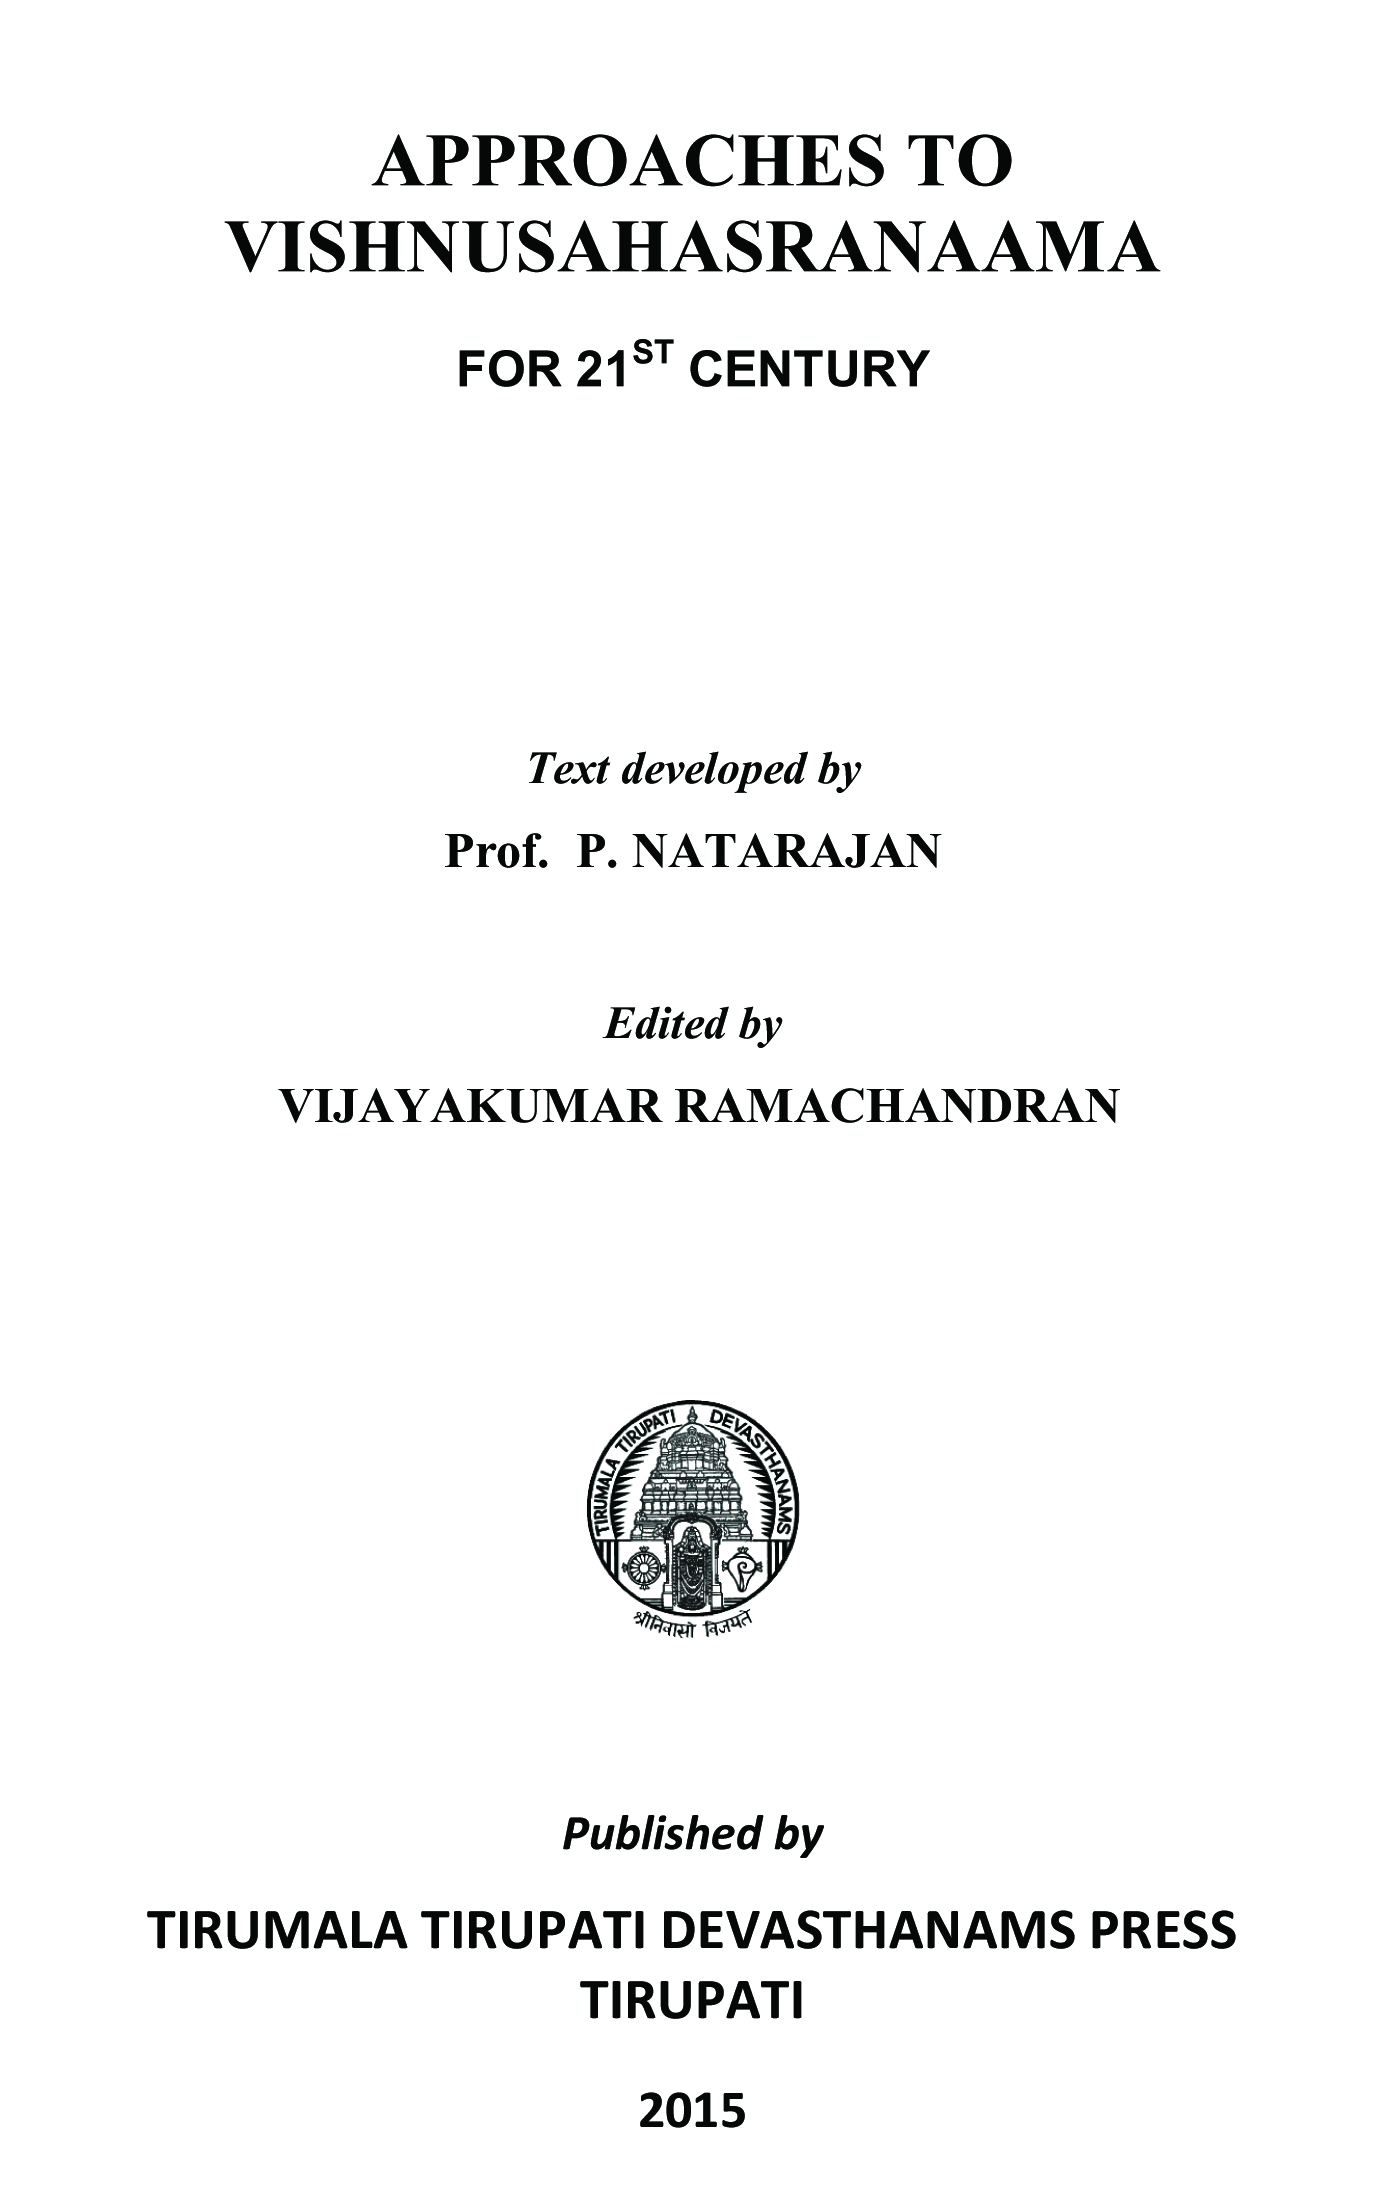 Approaches to Vishnusahasranamam.pdf